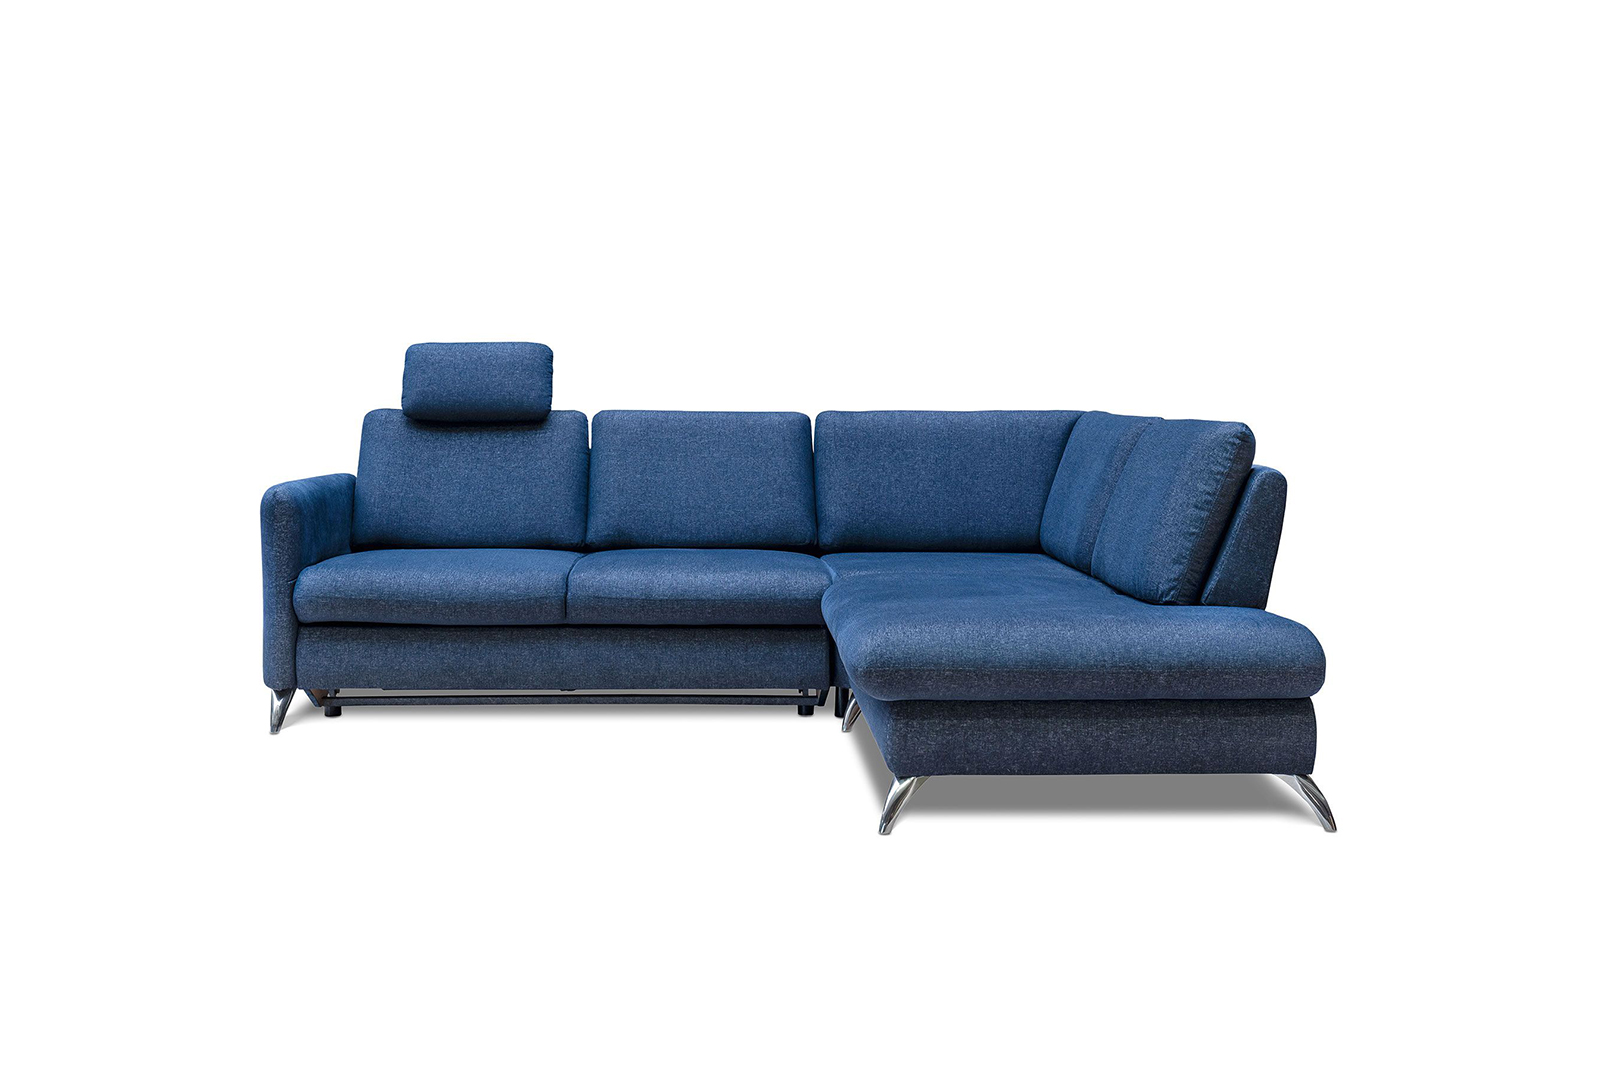 Corner sofa with sleeping function Tango